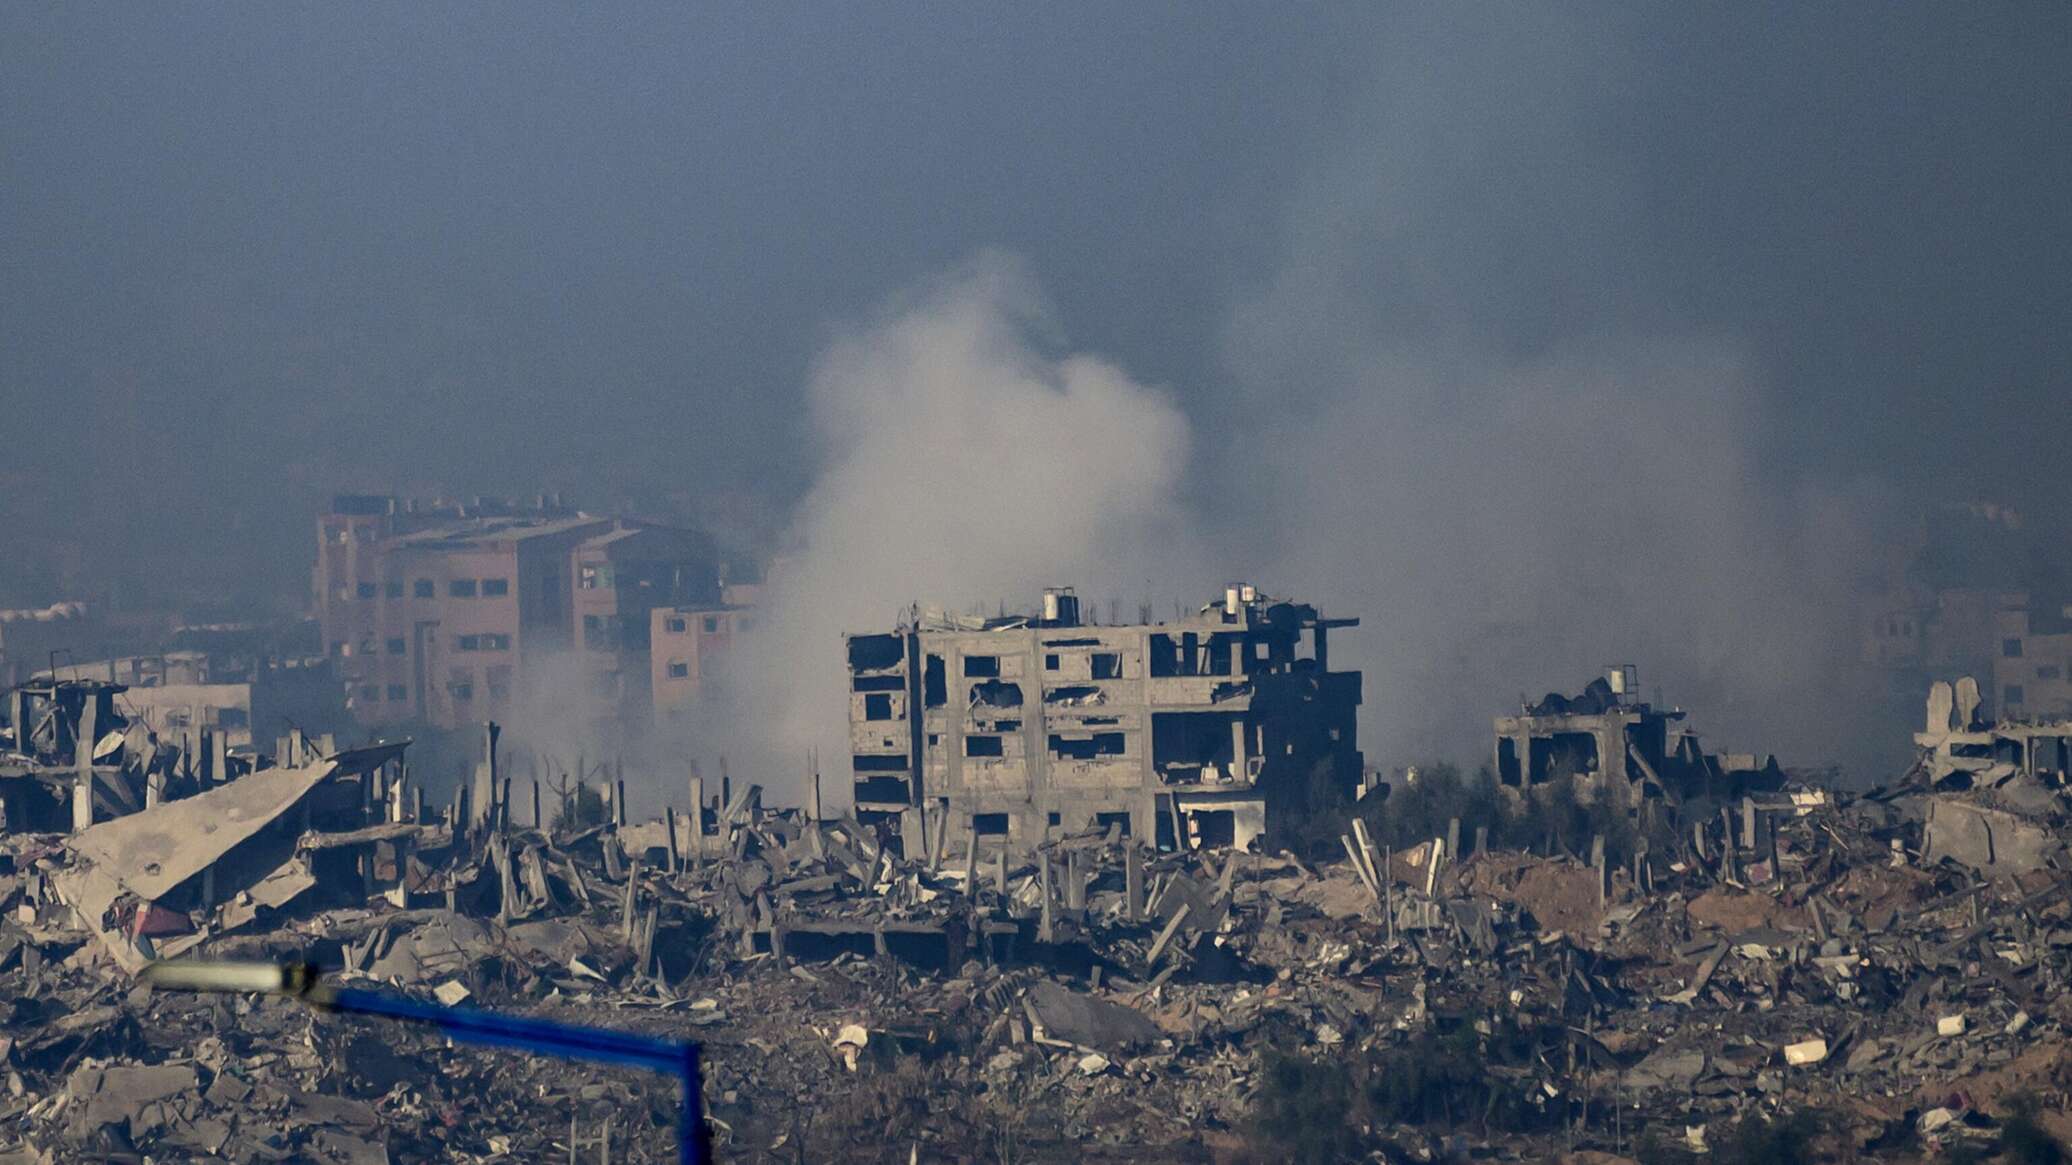 وزارة الصحة في غزة تعلن عن سقوط قتلى وجرحى ونشوب حريق عند بوابة مجمع "الشفاء" الطبي